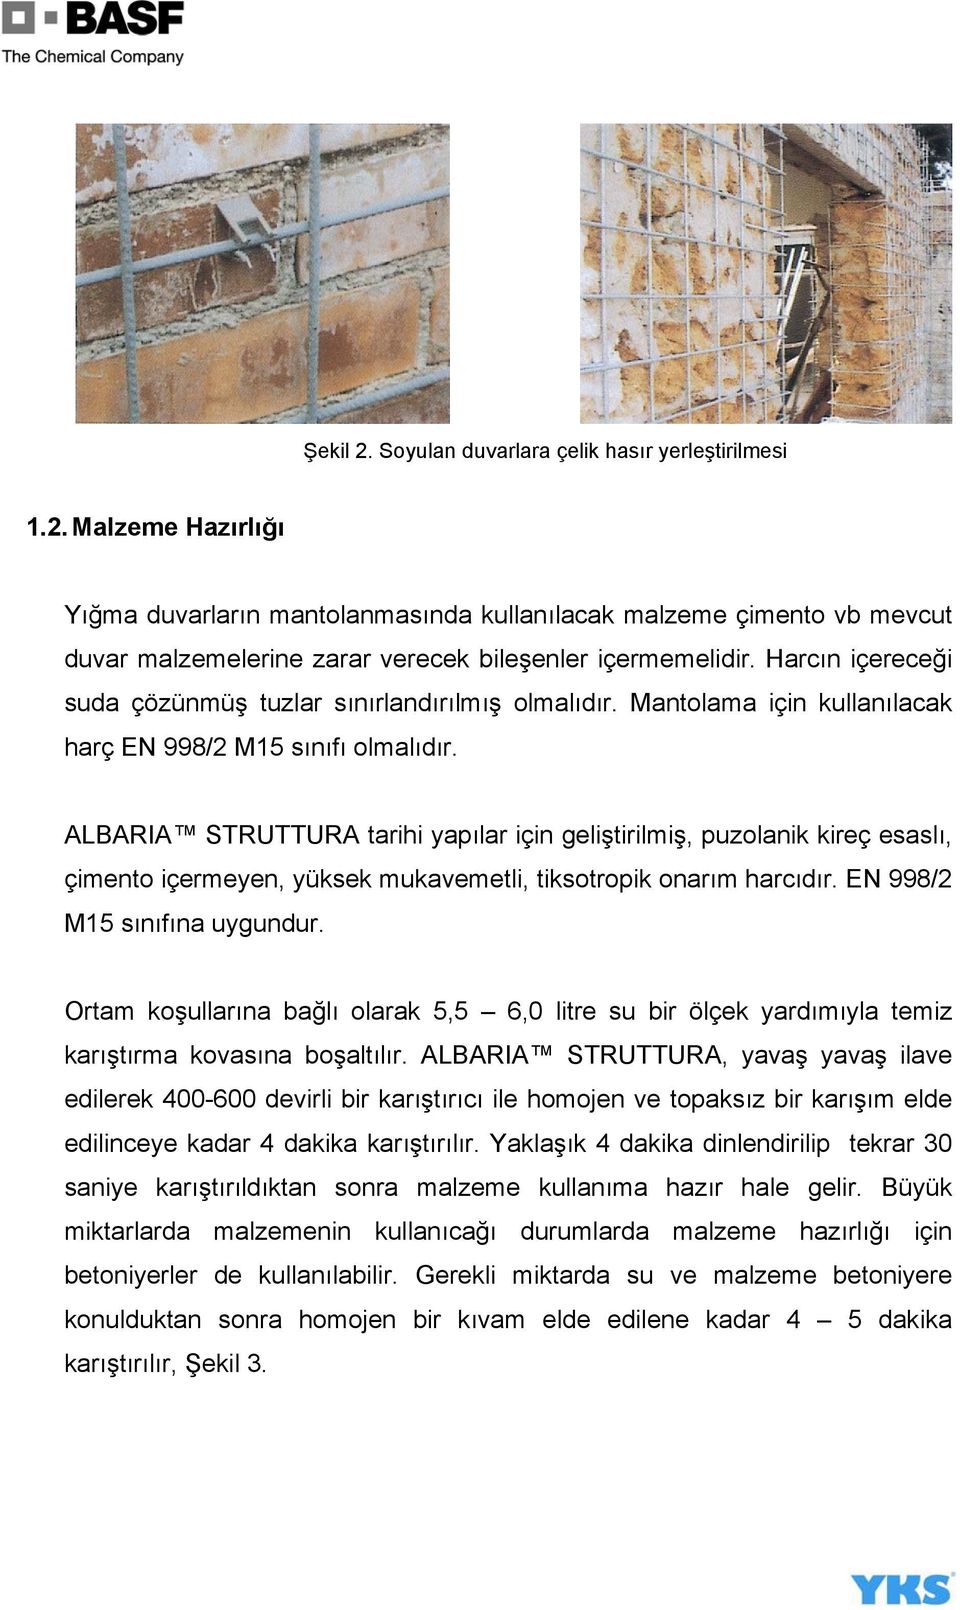 ALBARIA STRUTTURA tarihi yapılar için geliştirilmiş, puzolanik kireç esaslı, çimento içermeyen, yüksek mukavemetli, tiksotropik onarım harcıdır. EN 998/2 M15 sınıfına uygundur.